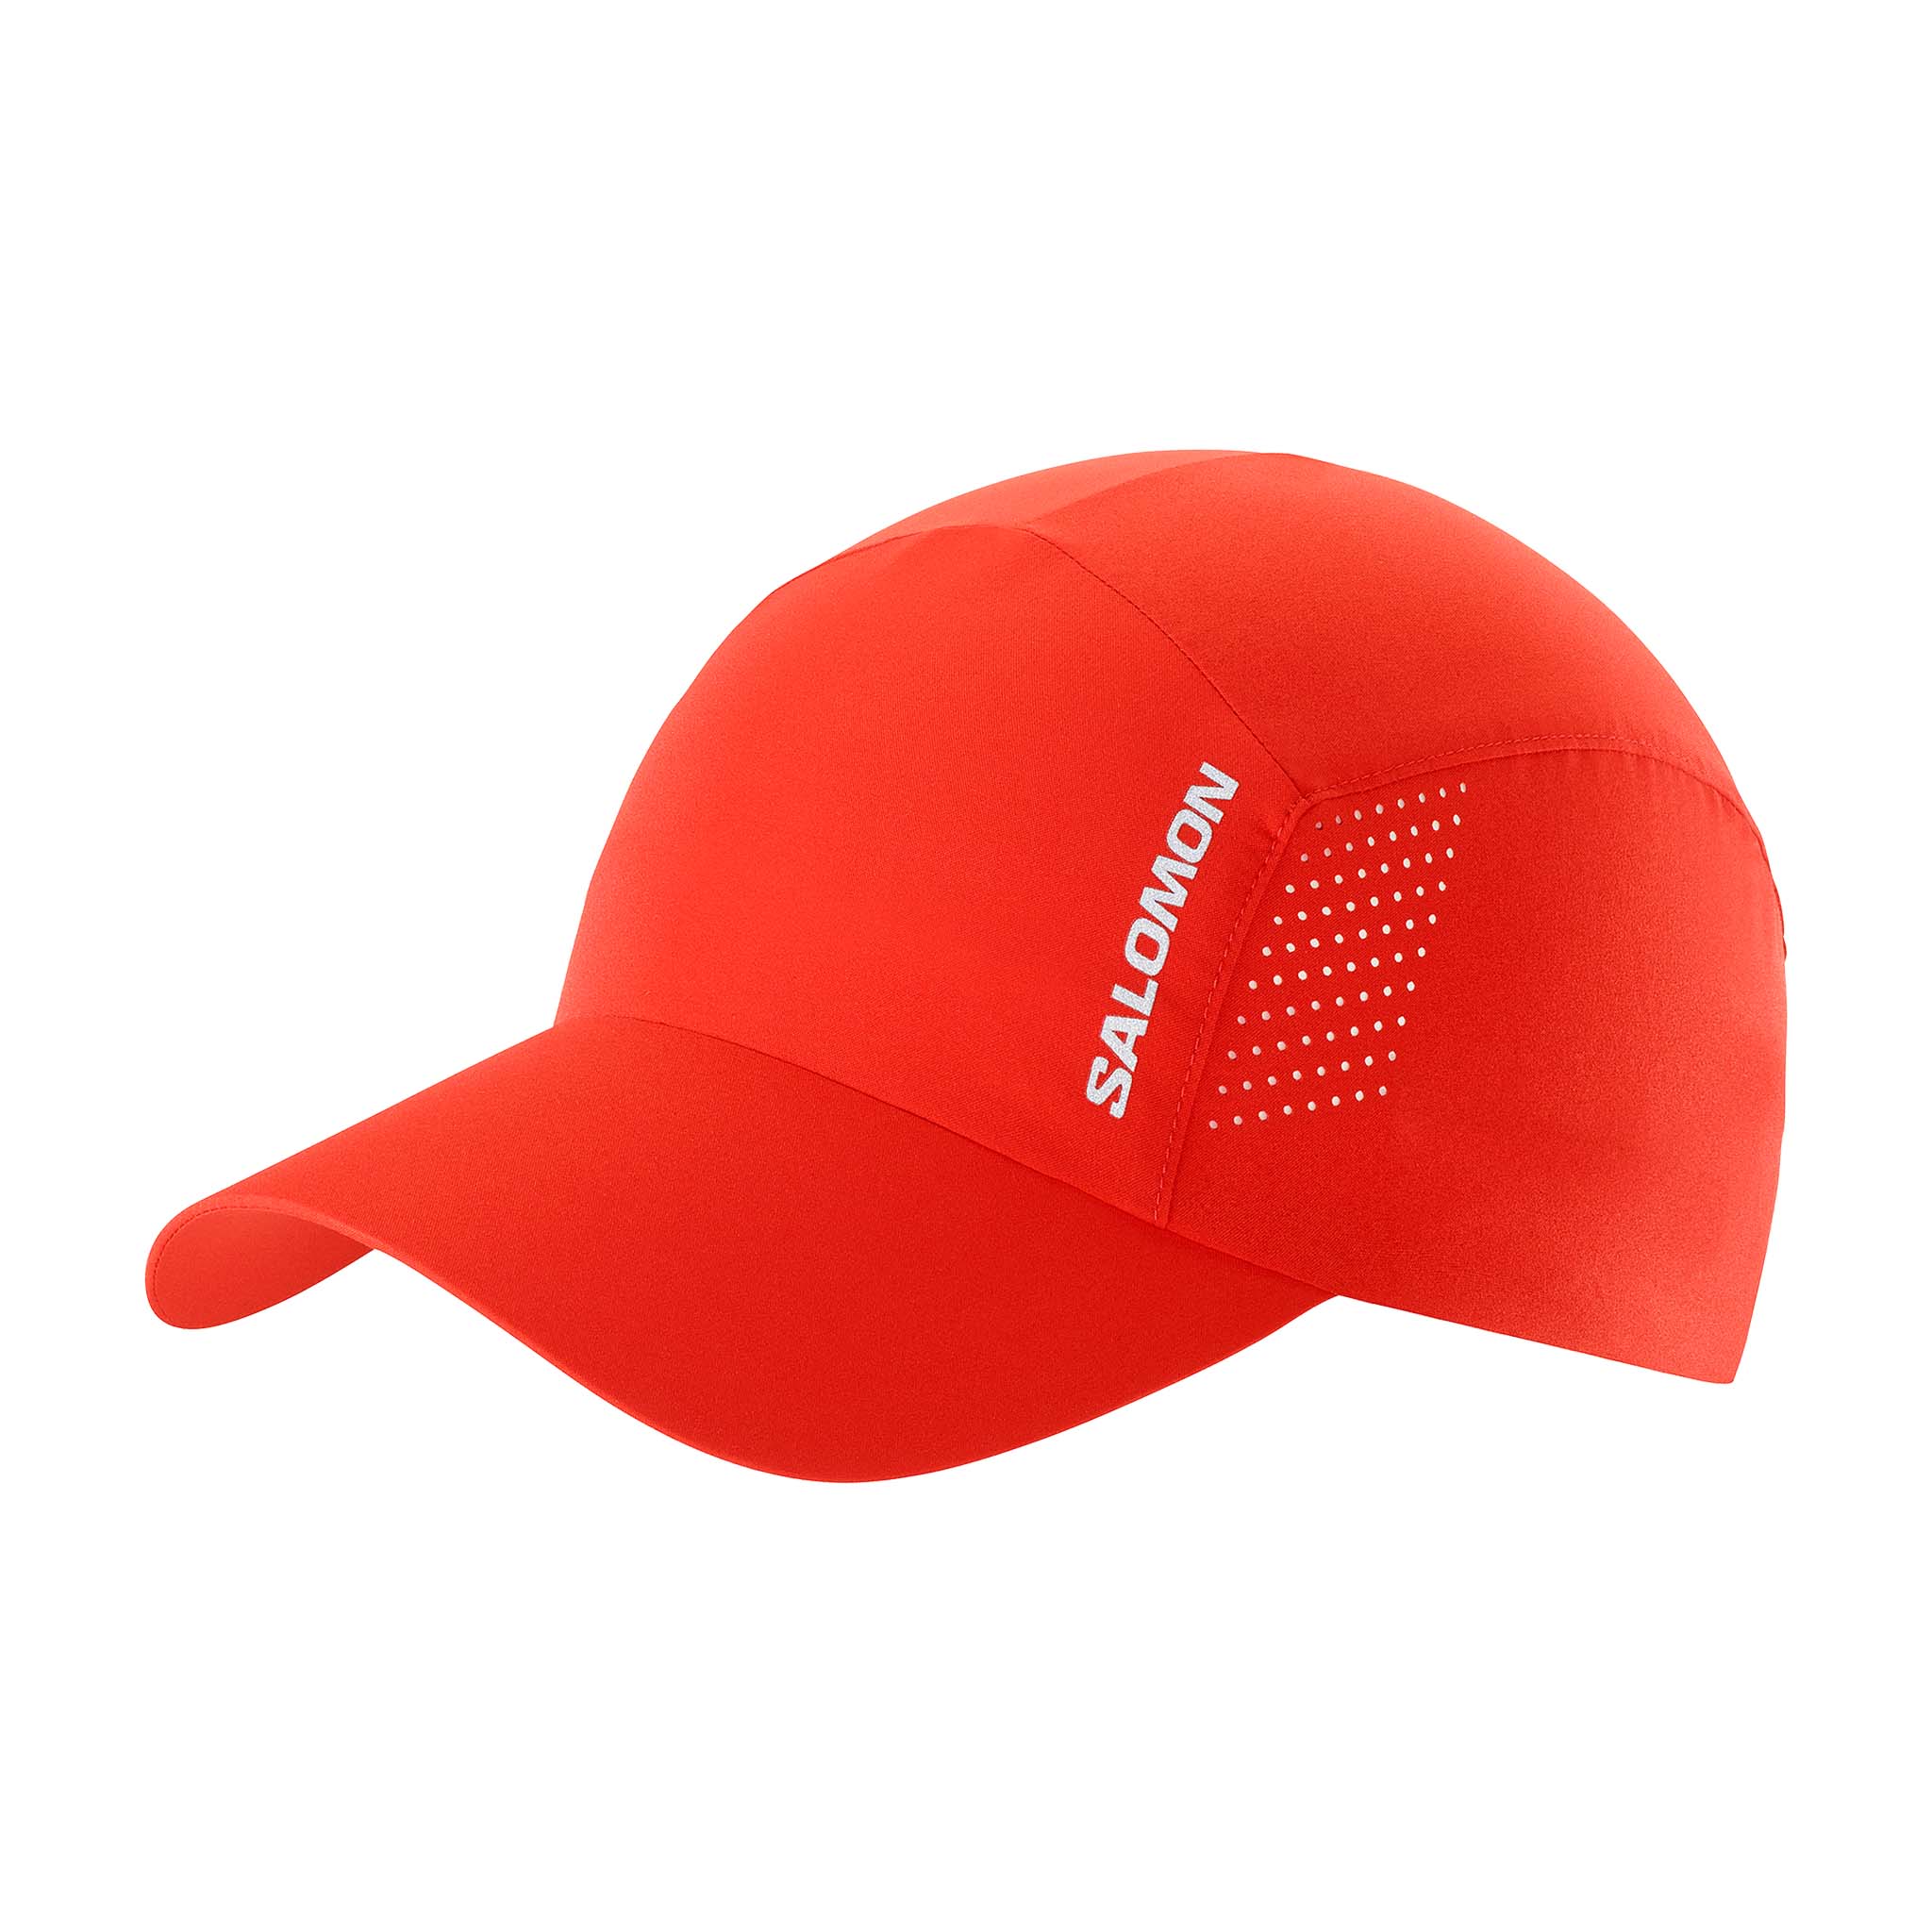 Salomon Unisex Cross Running Cap - Red